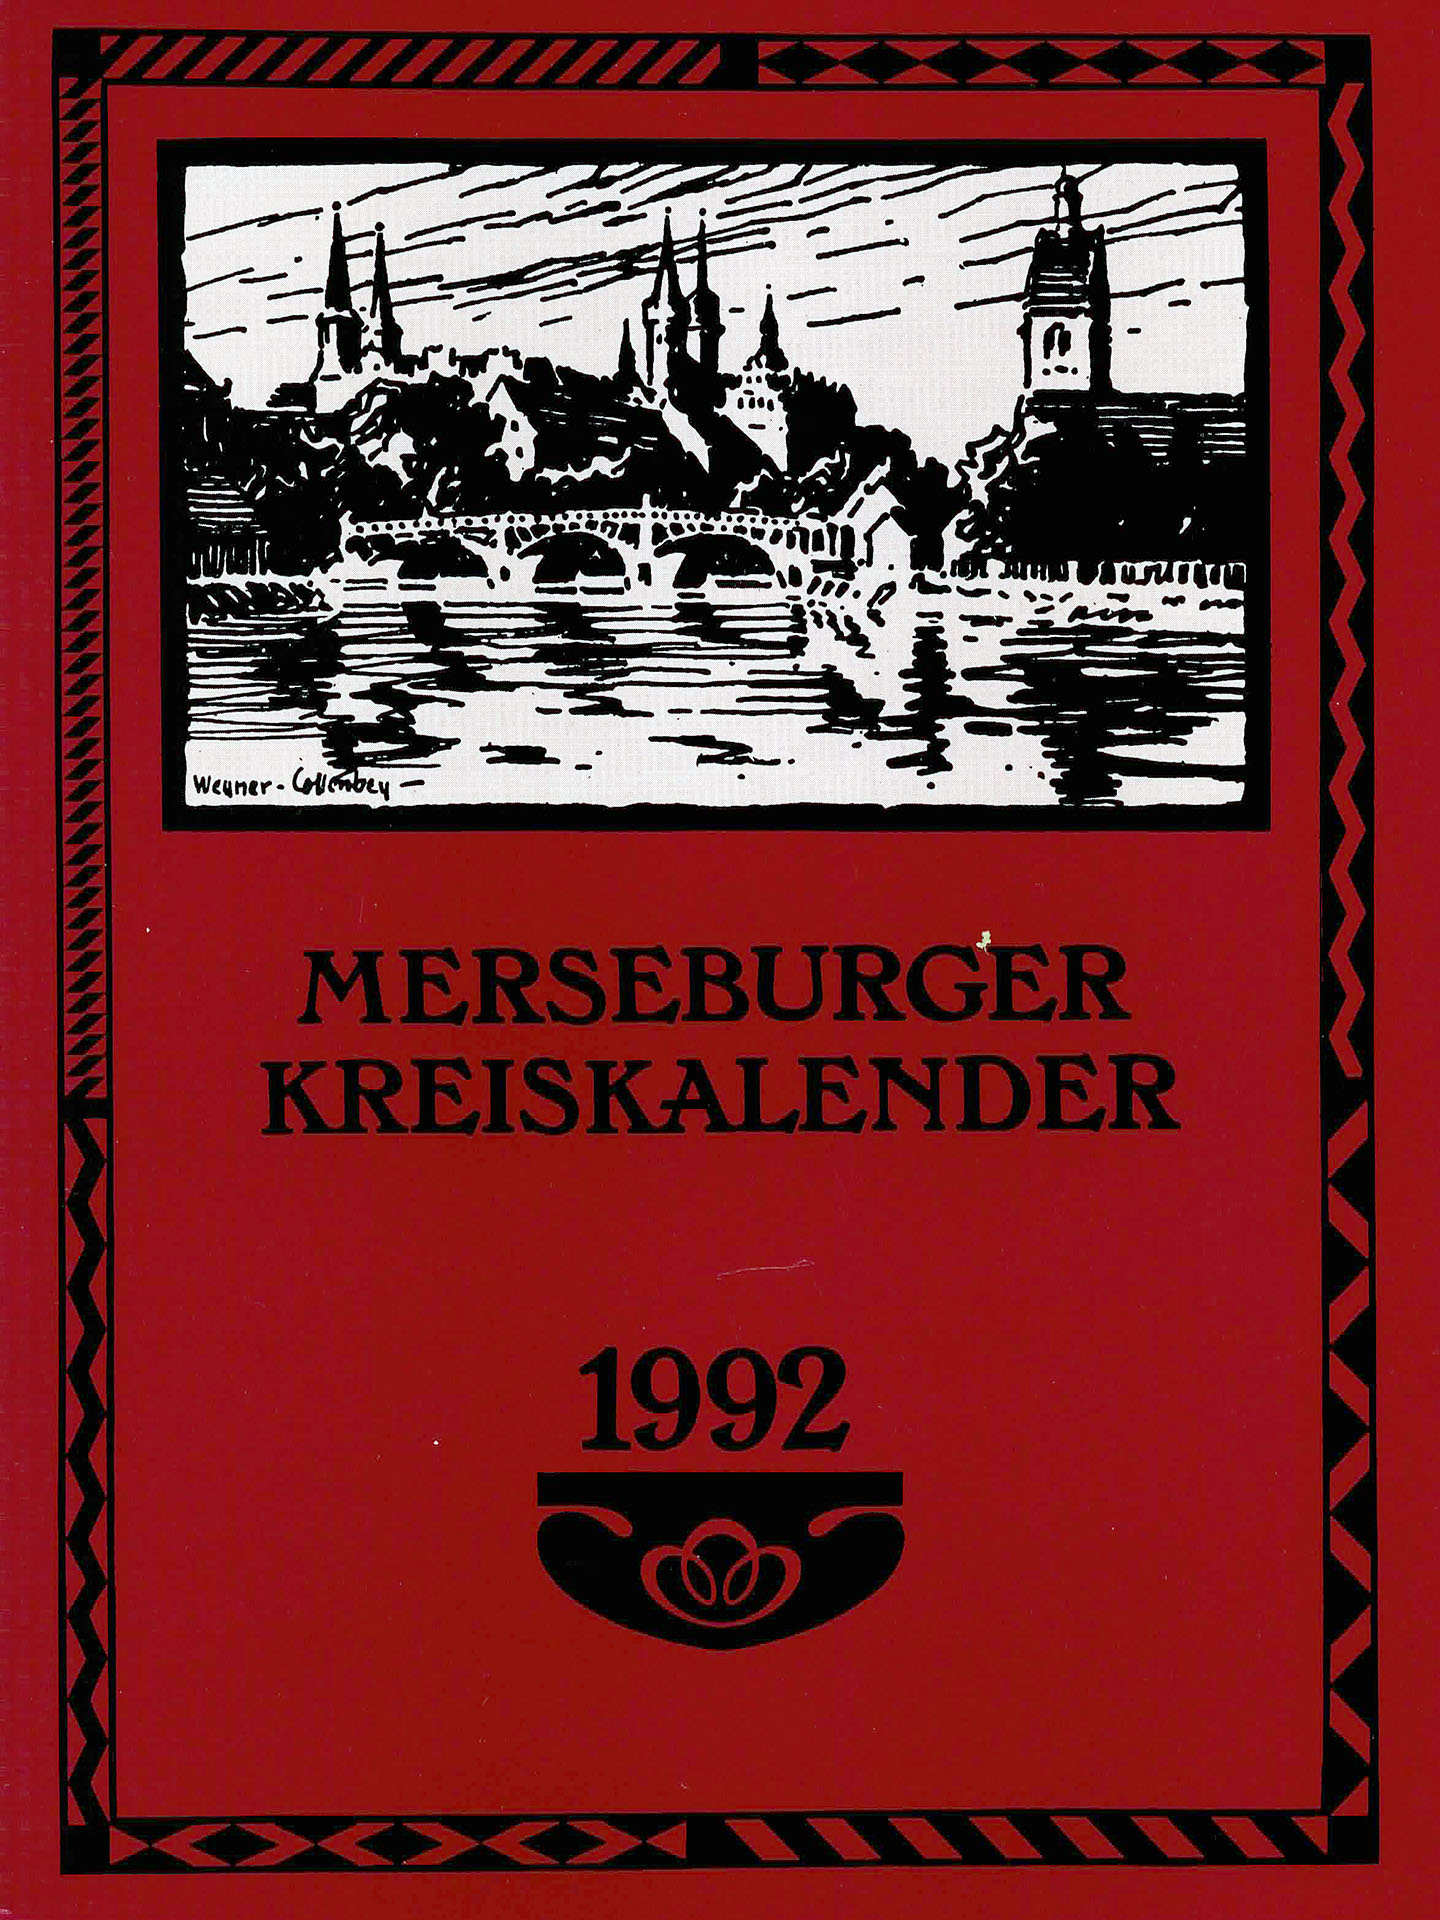 Merseburger Kreiskalender 1992